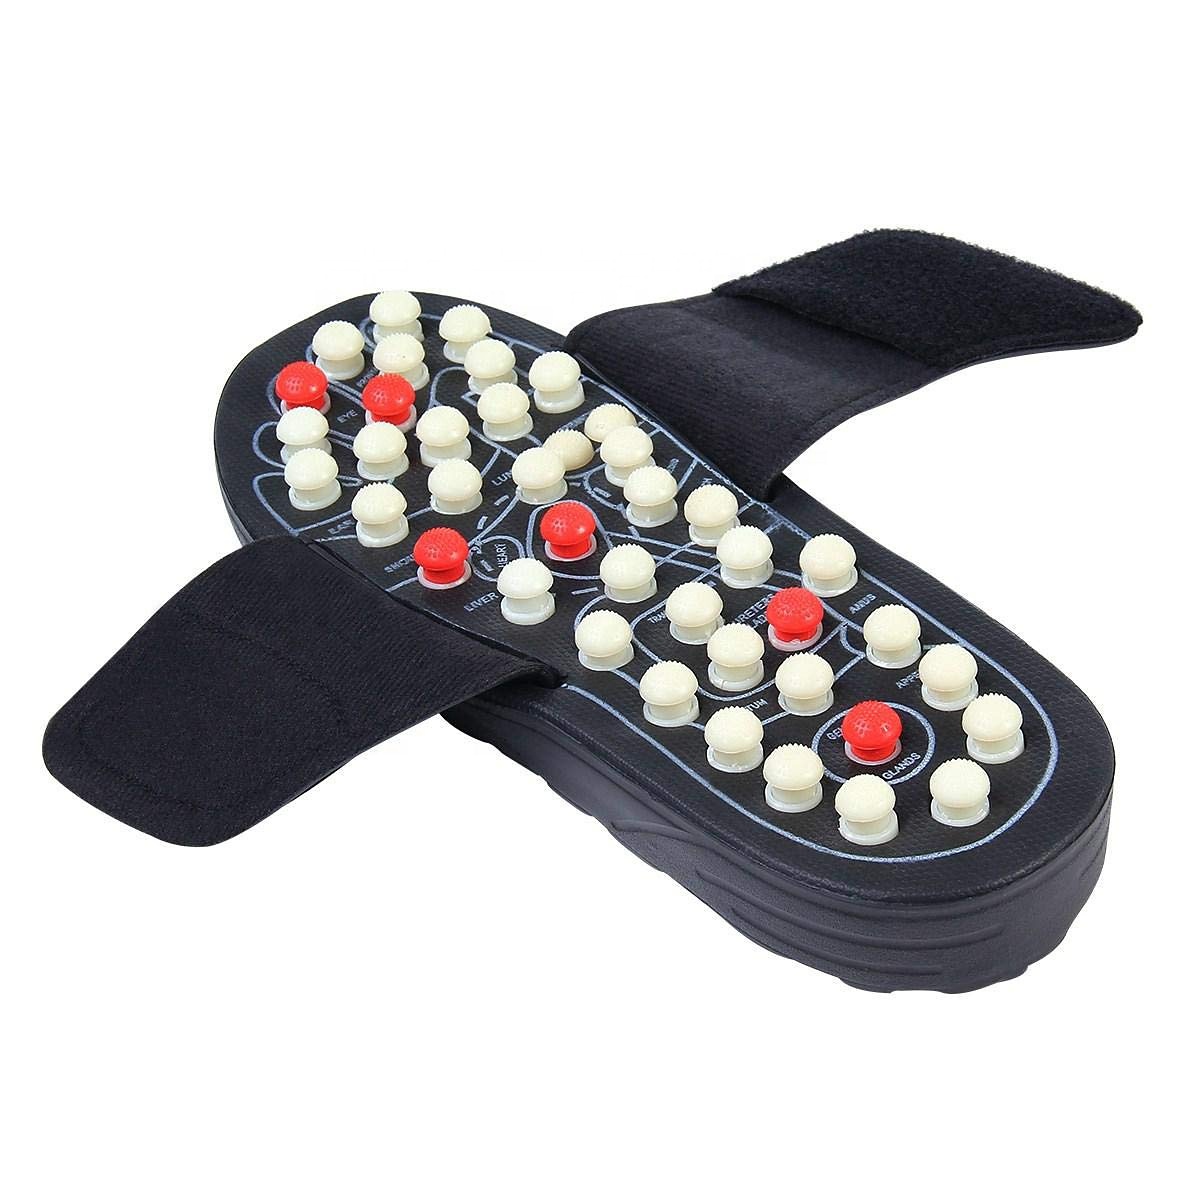 Sandaler med akupunktur fotmassage, Stl 40-41